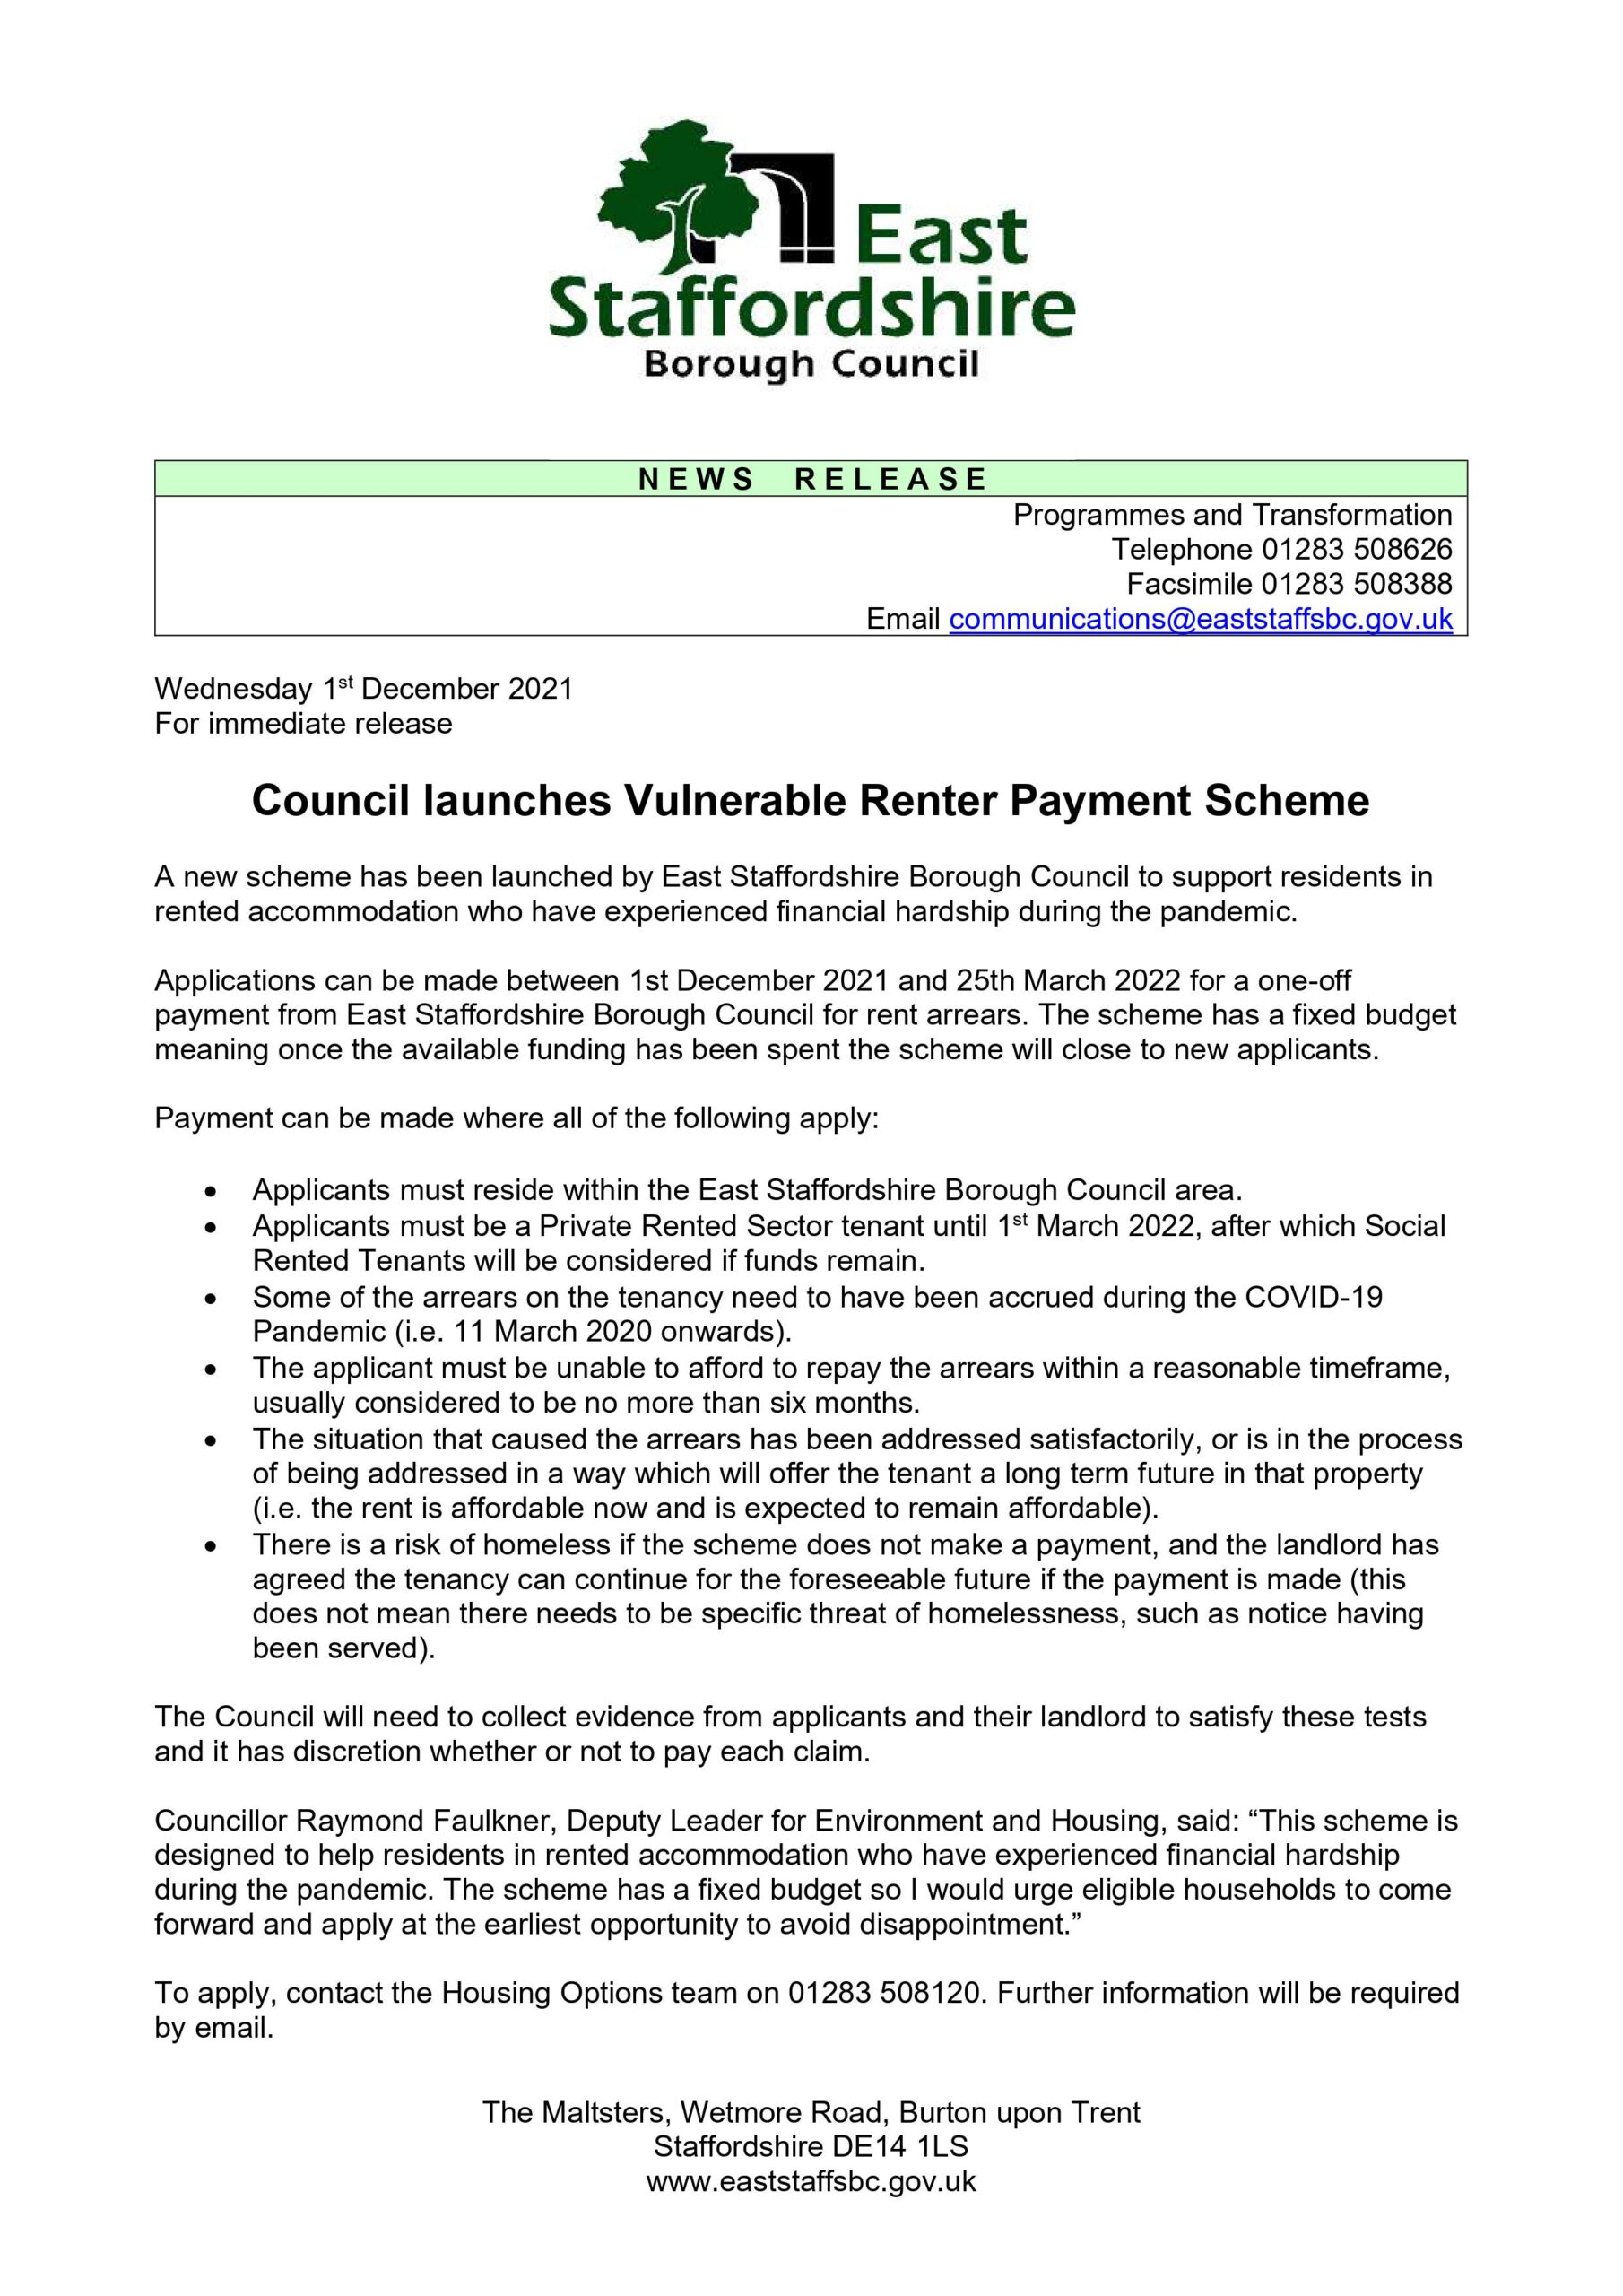 Council launches Vulnerable Renter Payment Scheme